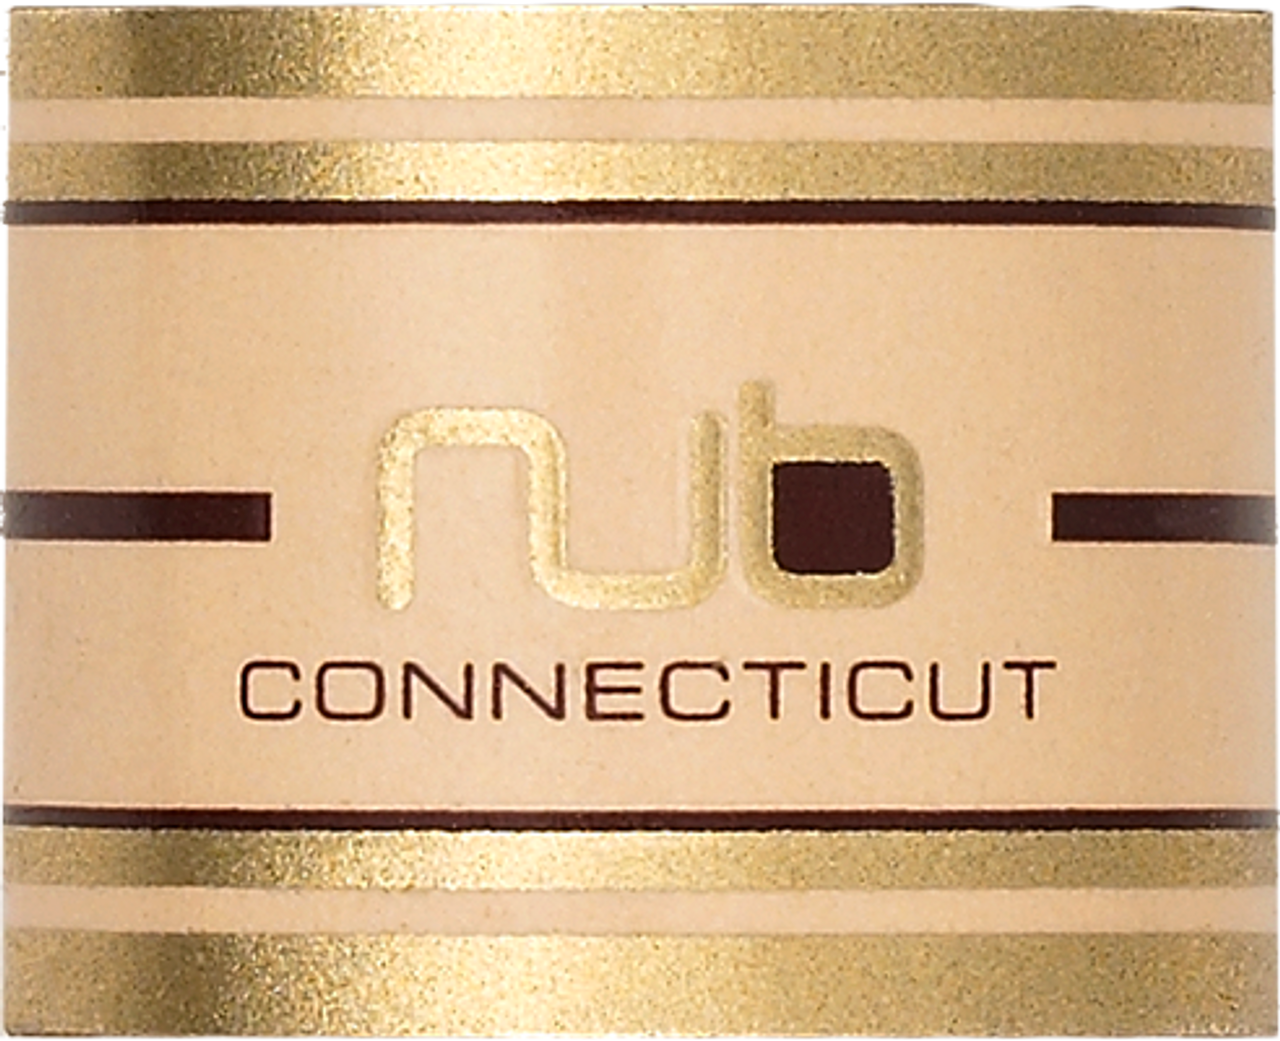 NUB Connecticut 354